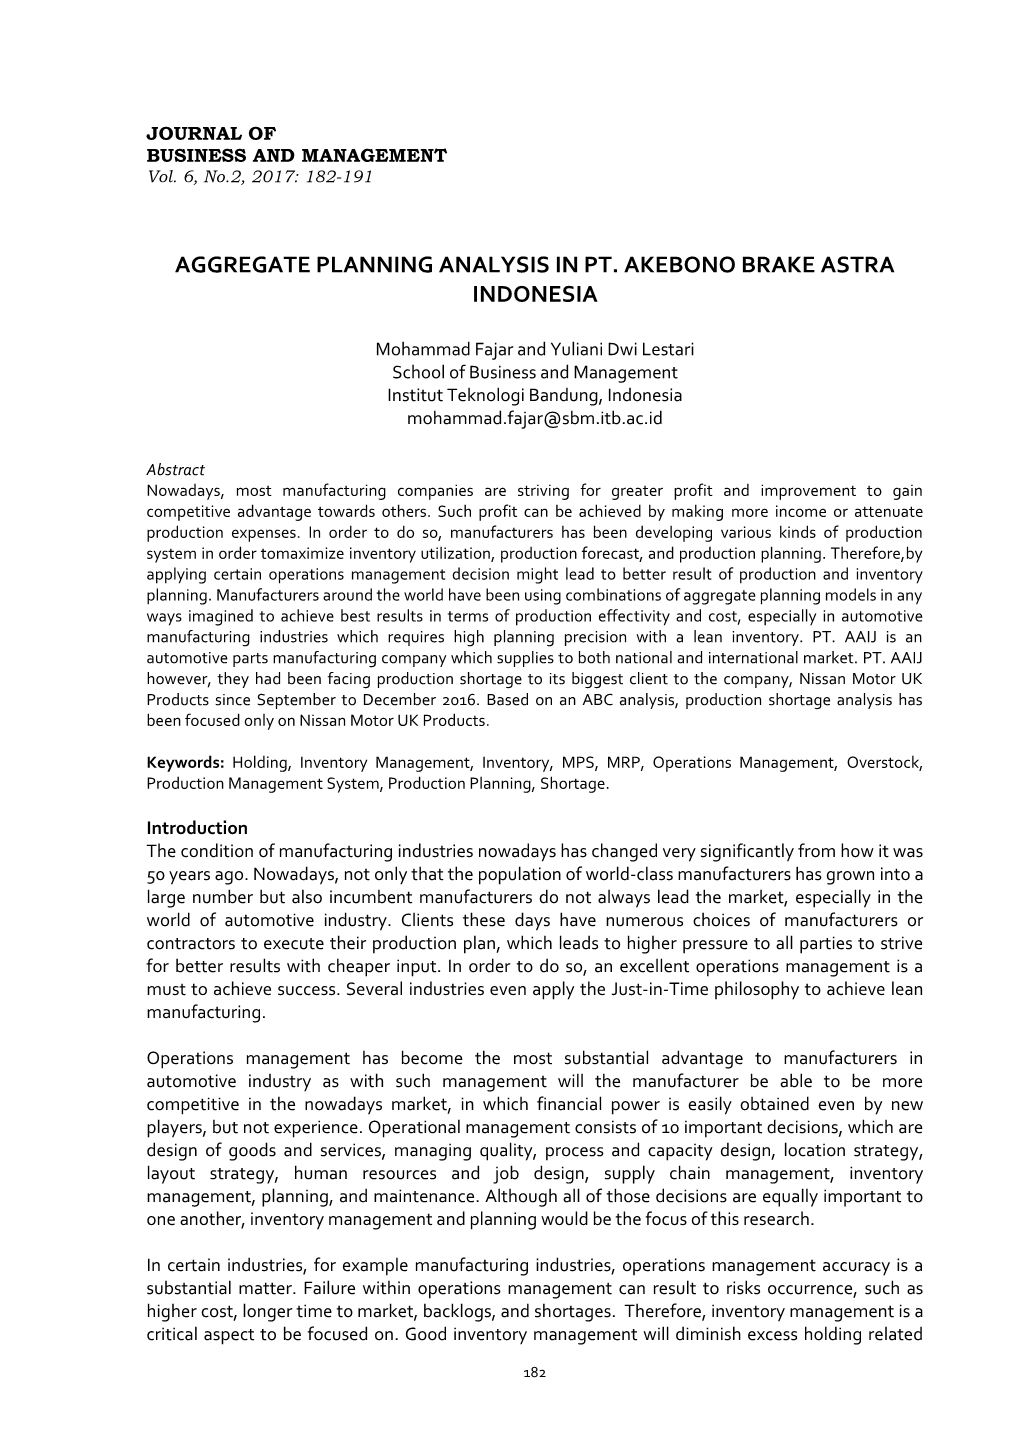 Aggregate Planning Analysis in Pt. Akebono Brake Astra Indonesia